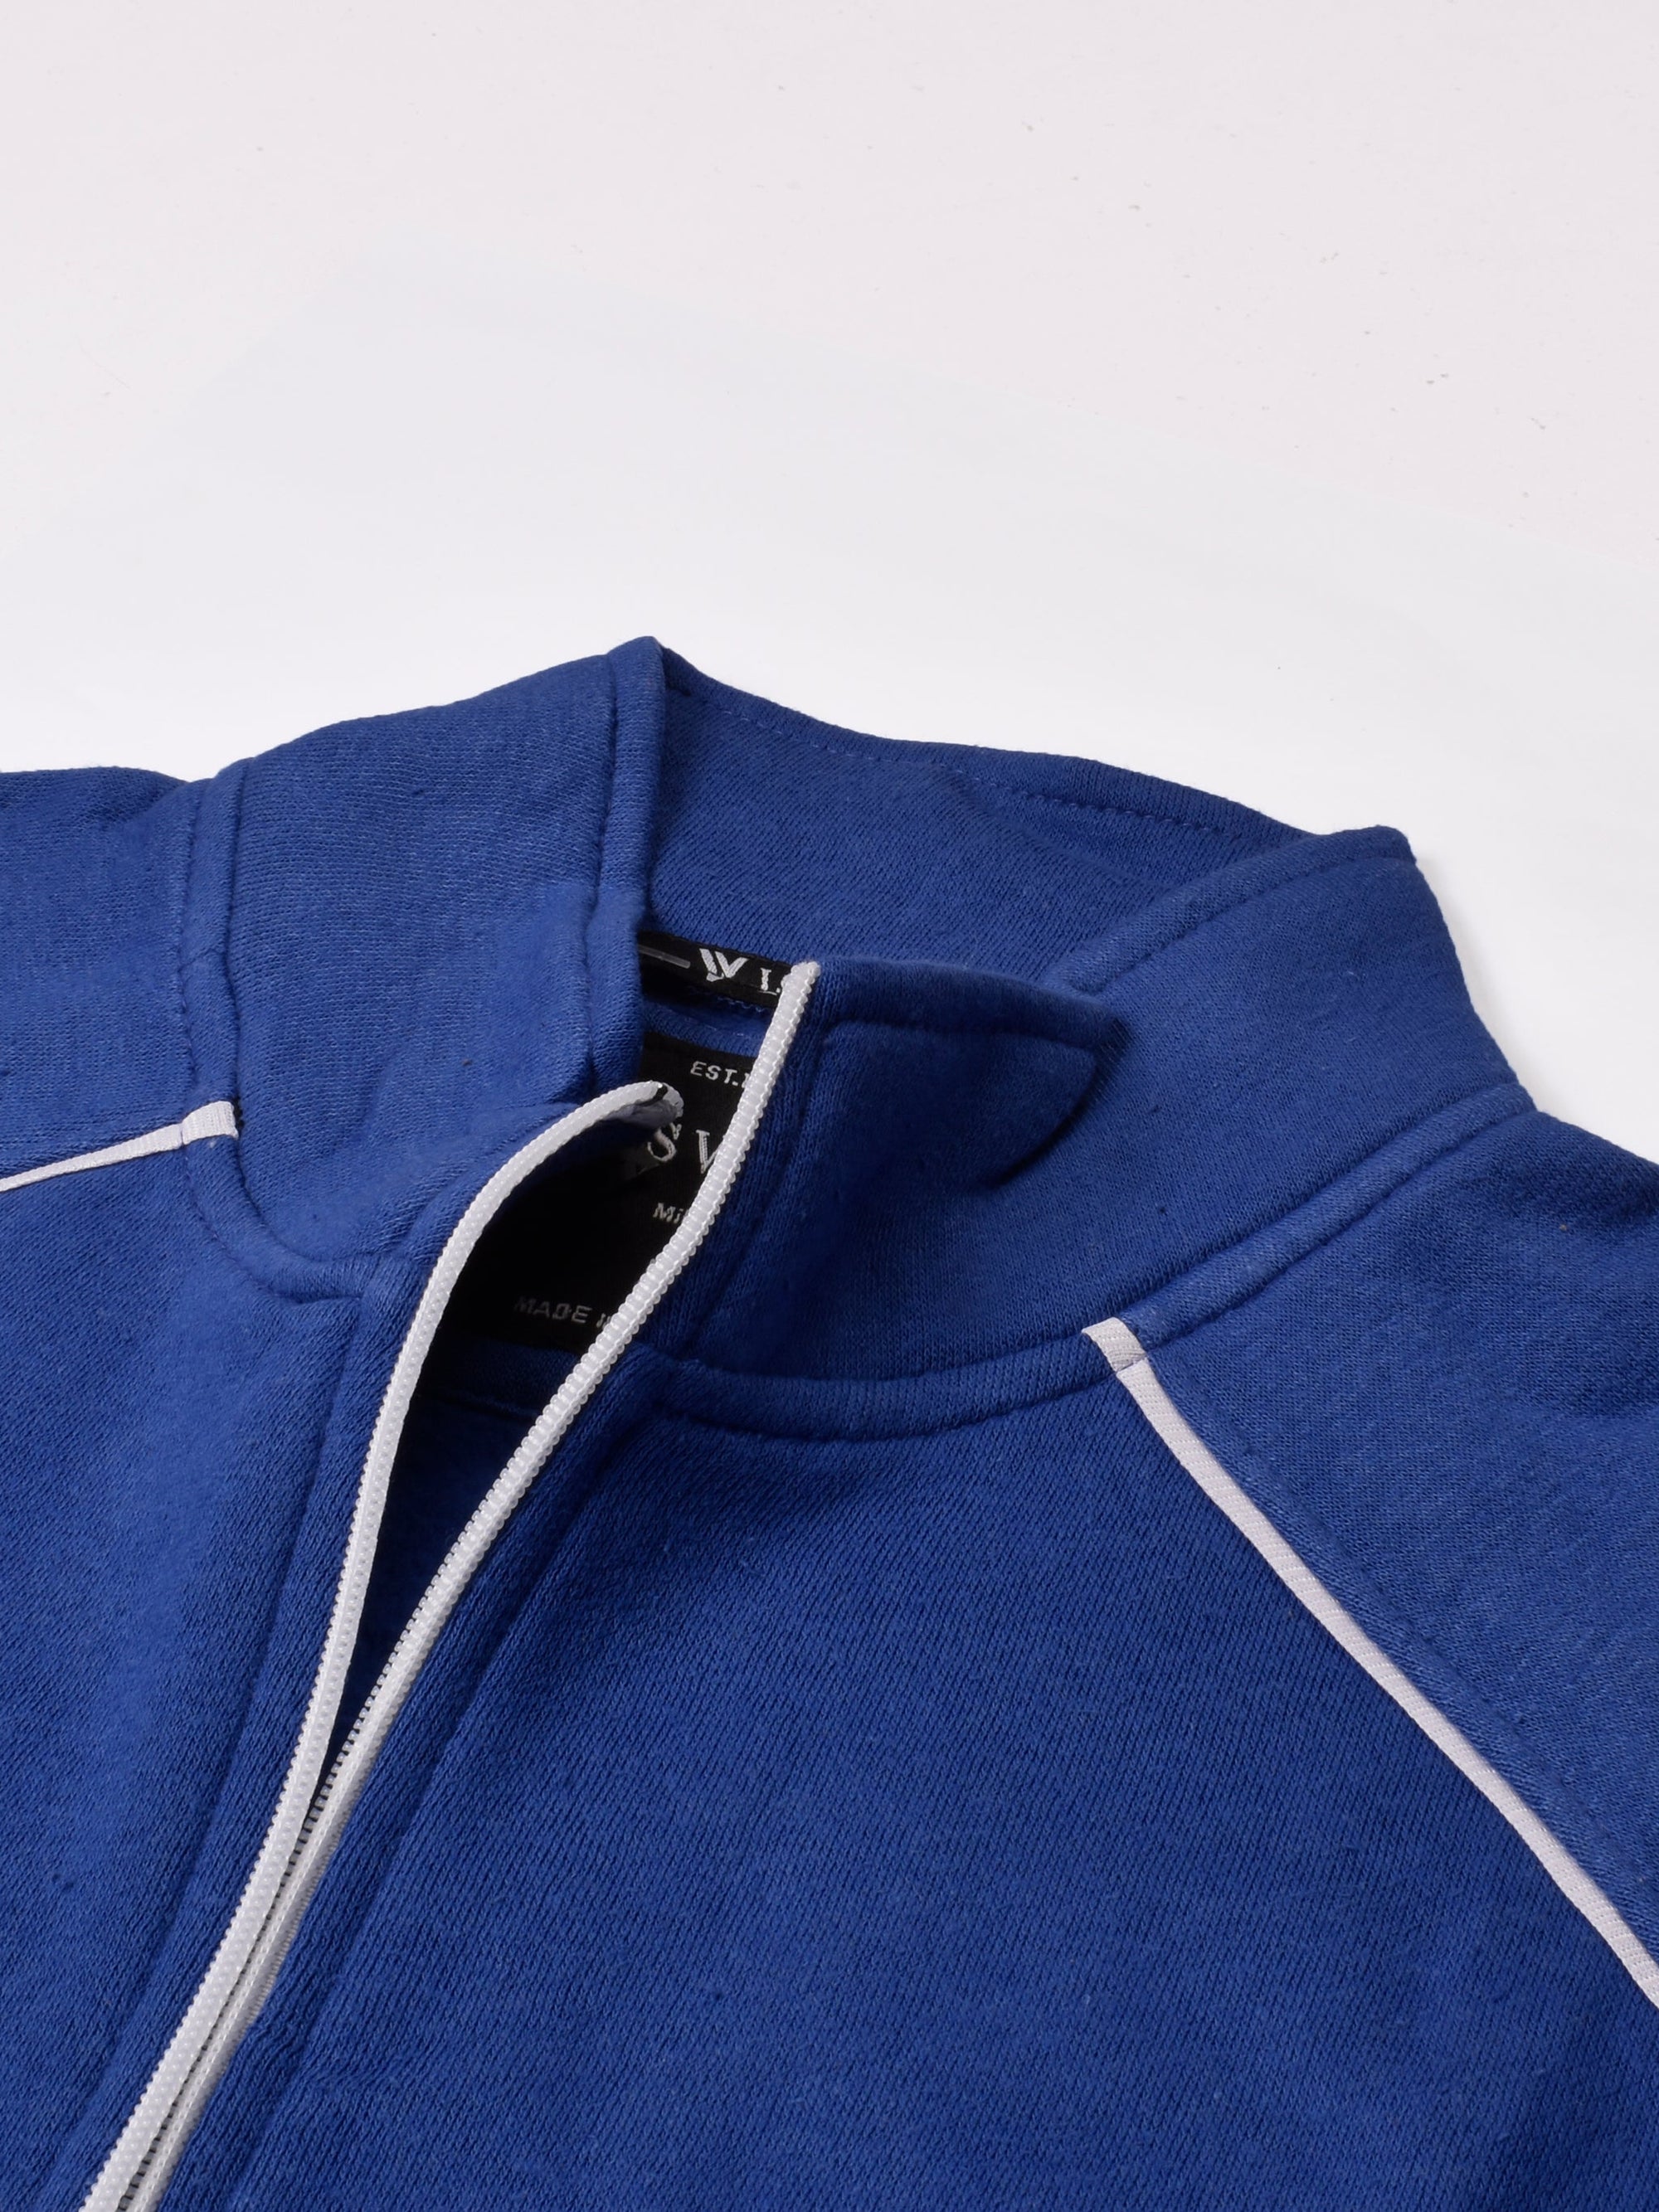 Louis Vicaci Fleece Zipper Tracksuit For Men-Royal Blue-RT1349